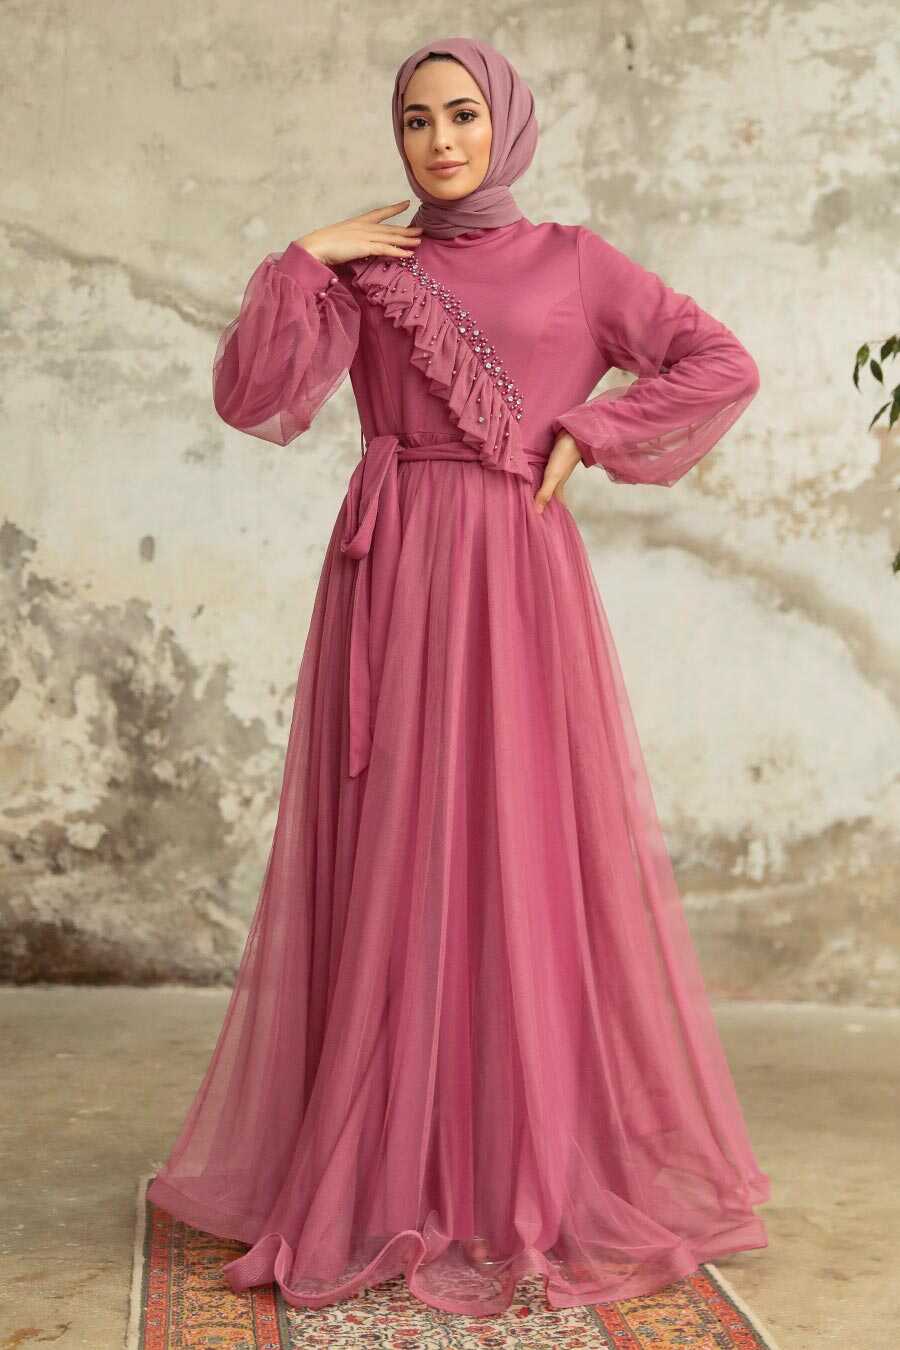 Neva Style - Dusty Rose Tukish Modest Bridesmaid Dress 25841GK